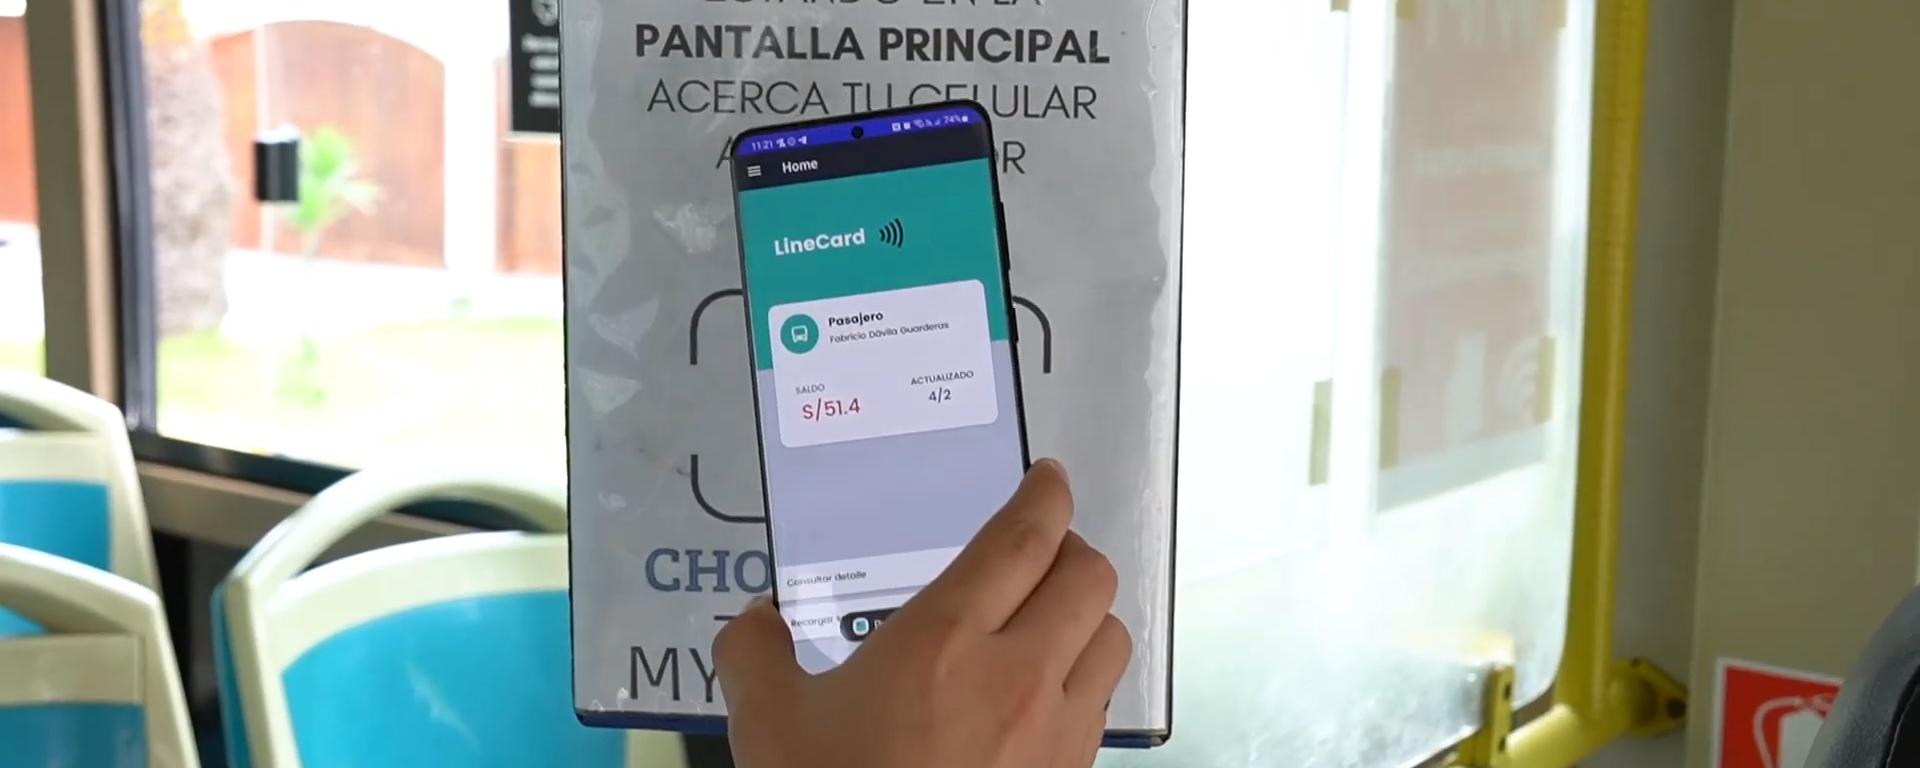 Dos estudiantes crean una app que busca revolucionar el pago en el transporte público a través de la tecnología NFC